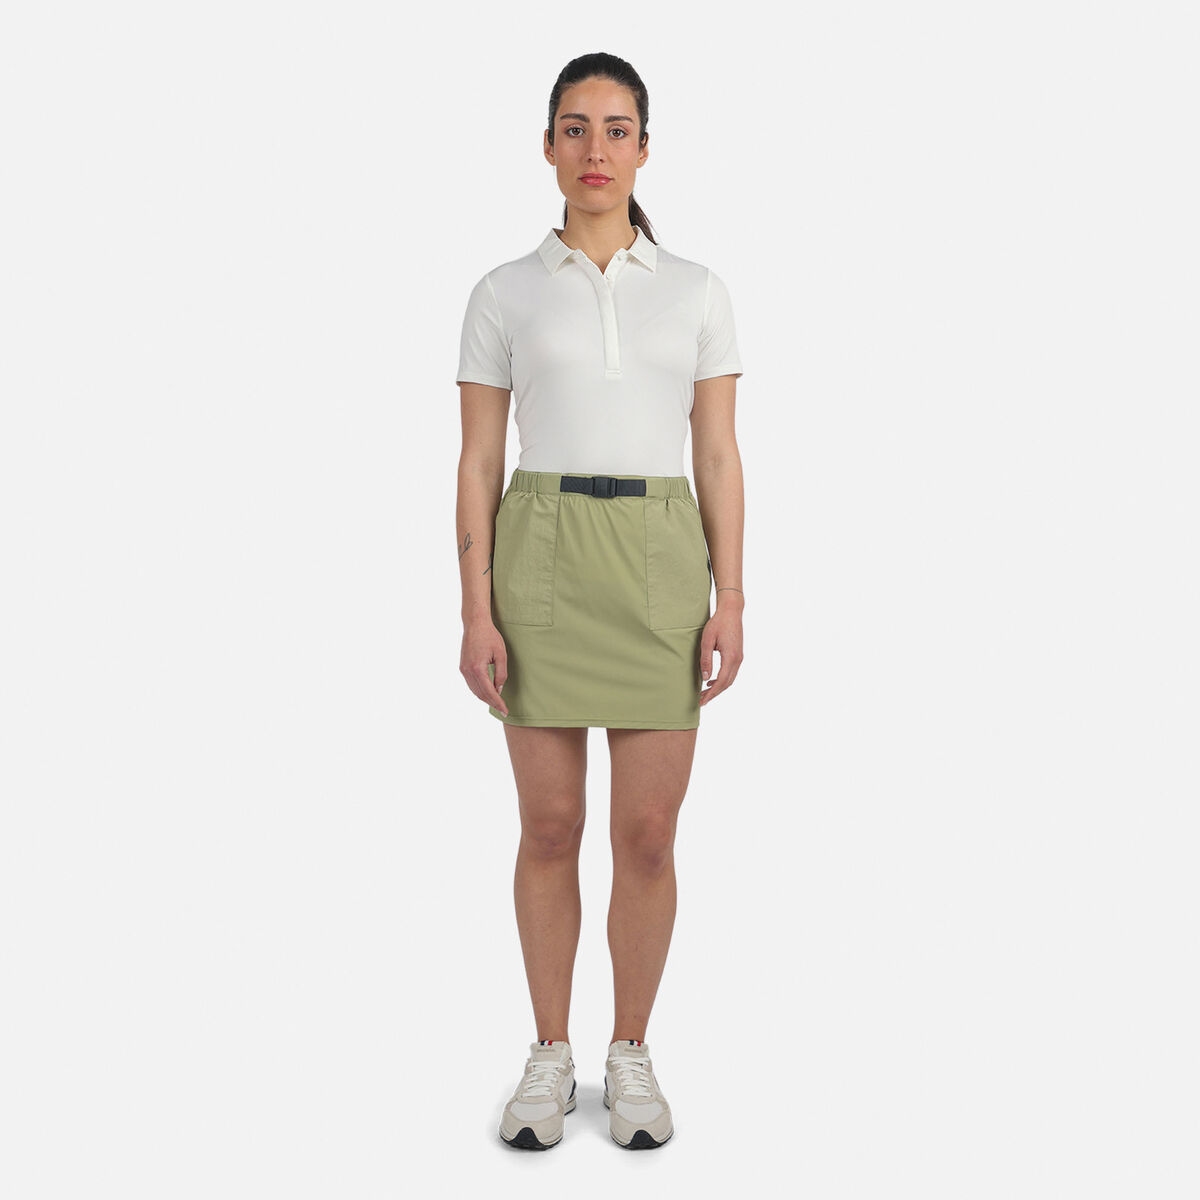 Women's E-Fiber Active Skirt